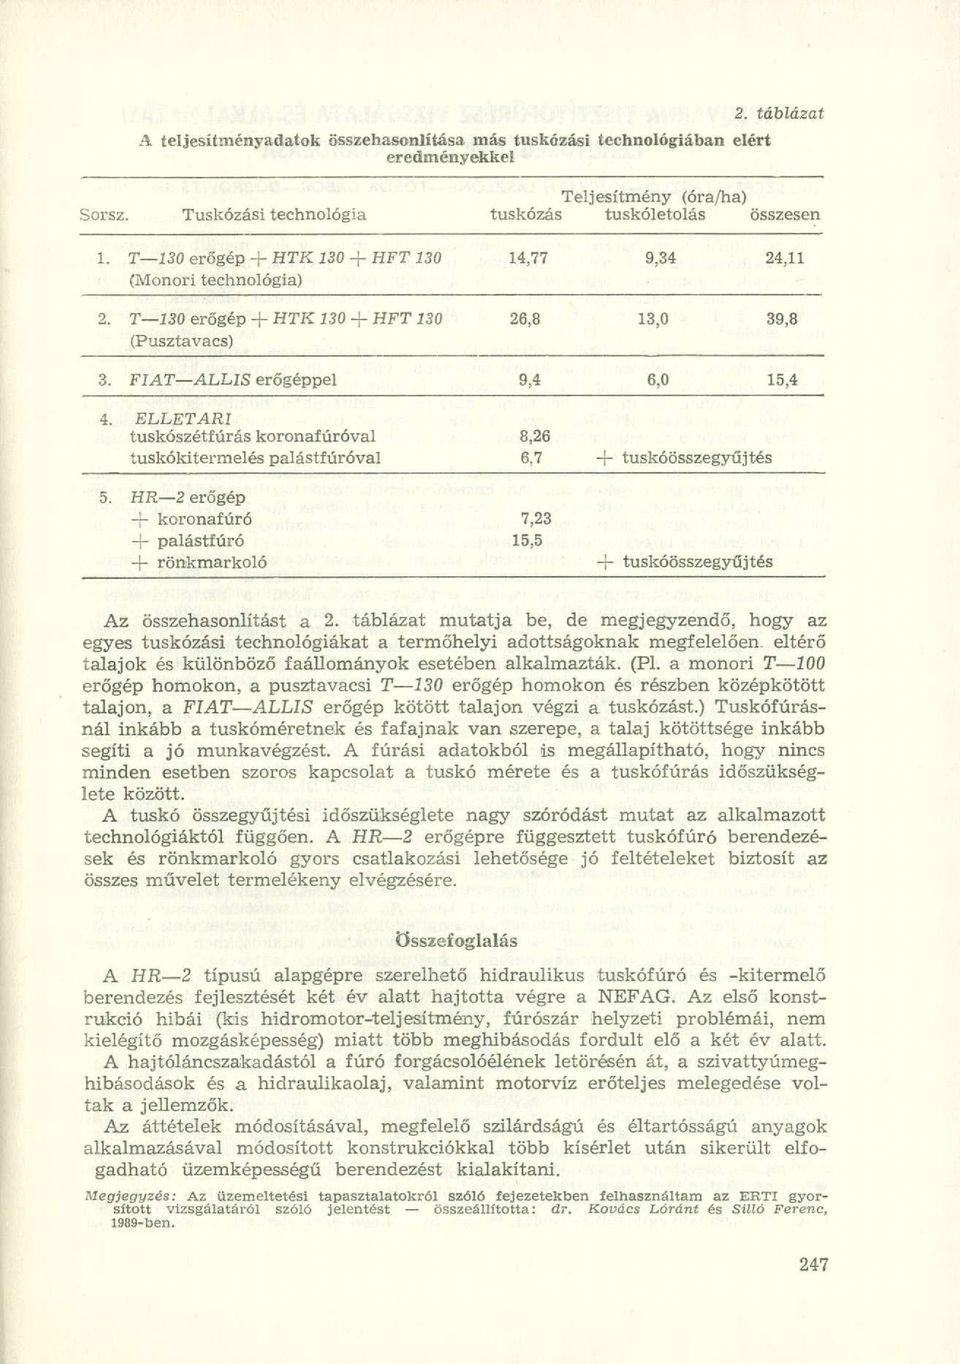 ELLETARI tuskószétf úrás koronafúróval tuskókitermelés palástfúróval 8,26 6,7 + tuskóösszegyűjtés 5.